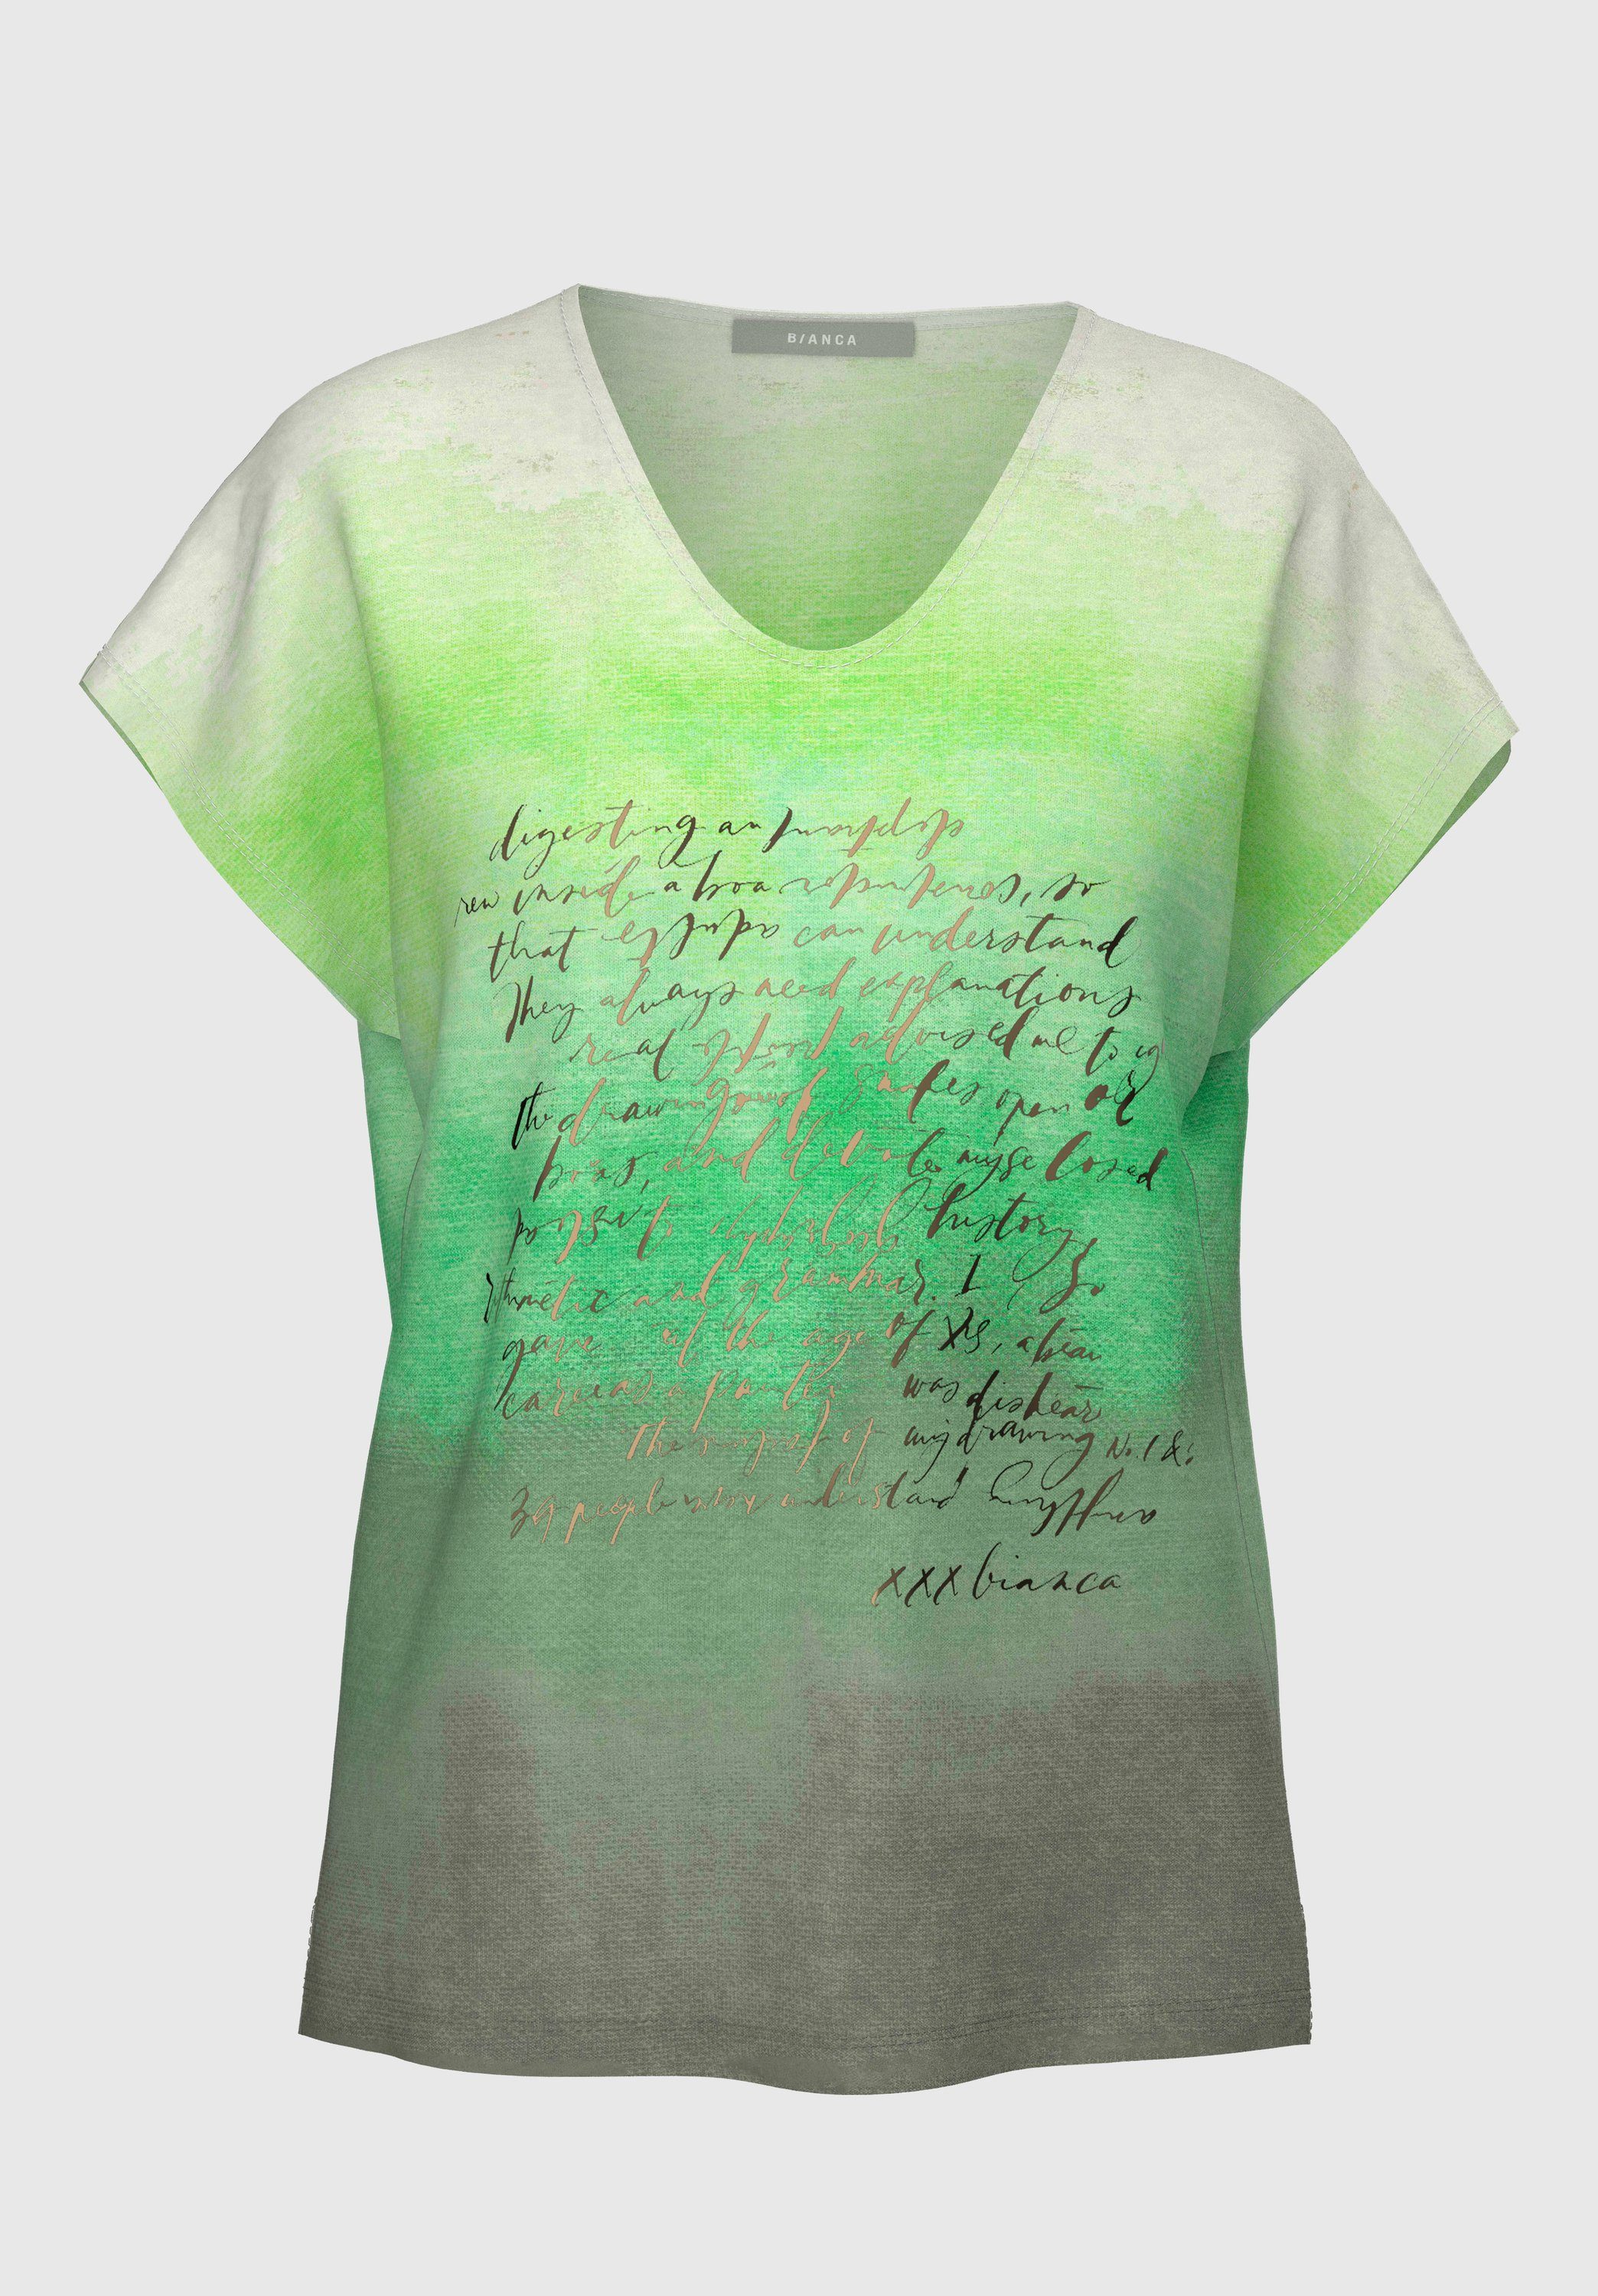 bianca Print-Shirt mit JULIE Trendfarben absoluten Frontmotiv mix coolem green in